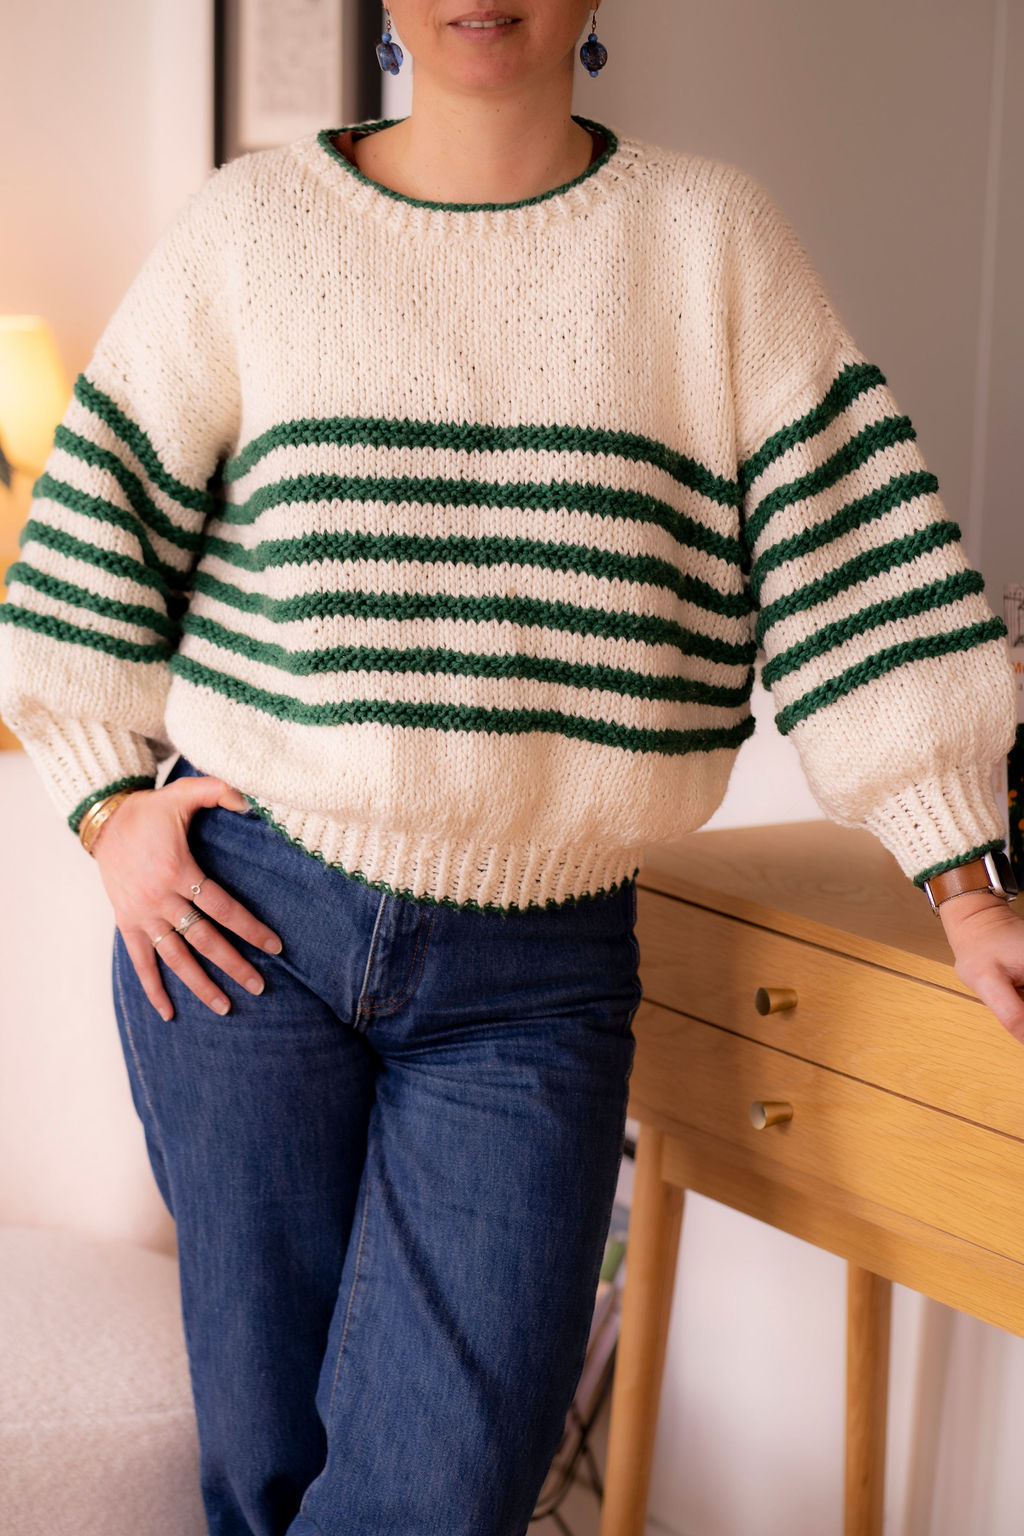 Coups de cœur tricotés (et oui le tricot c'est tendance!)